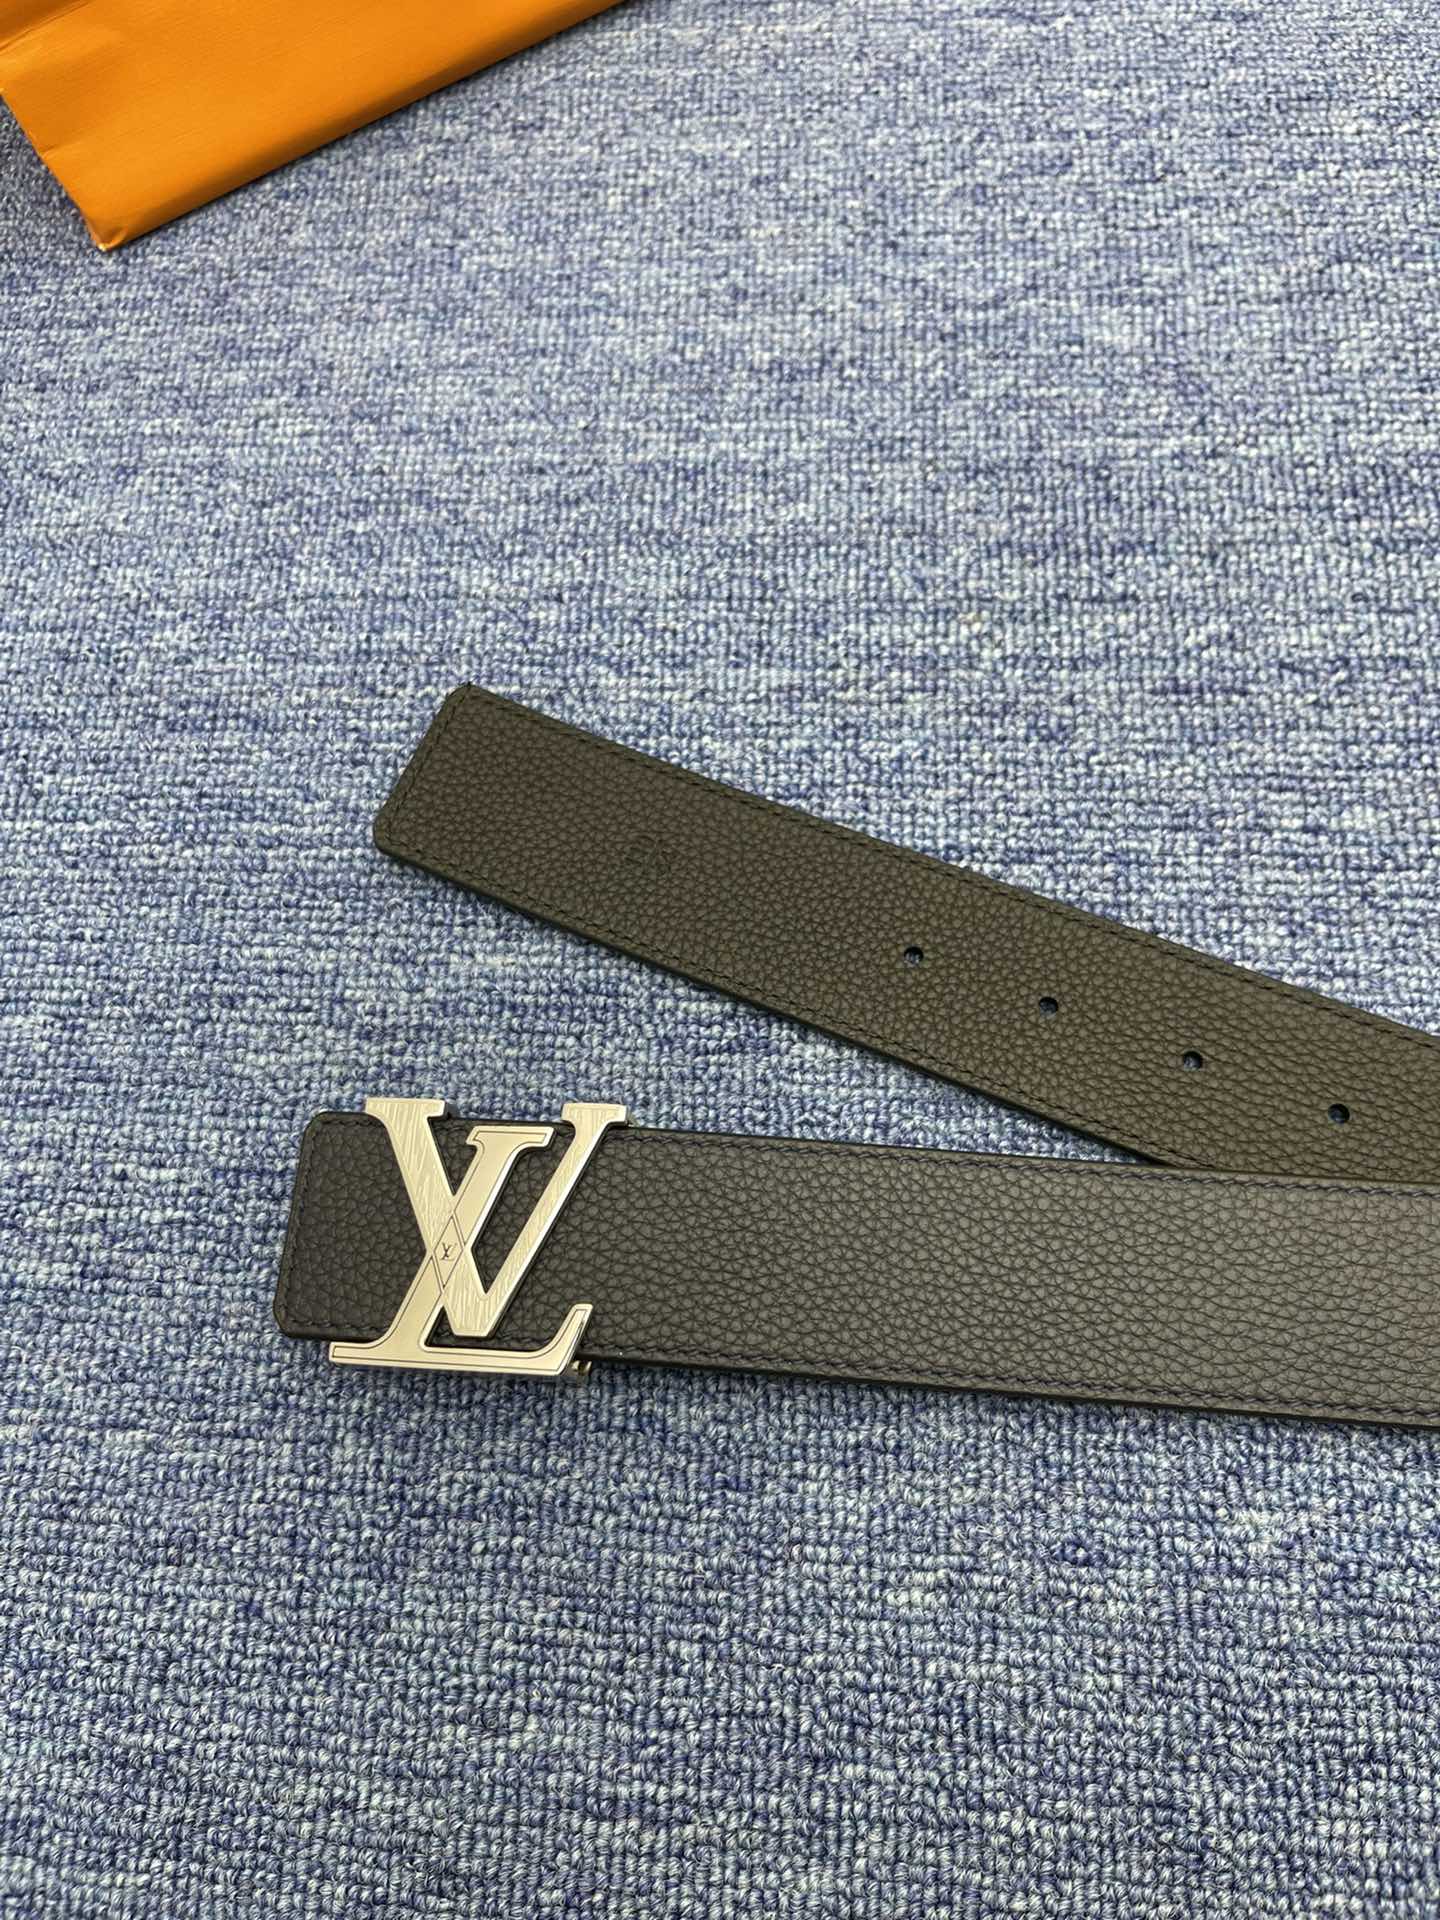 品牌LV4.0cm描述这款饰有LV带扣的腰带配以水牛皮衬里覆以Monogram牛皮展现细腻的品牌特质是牛